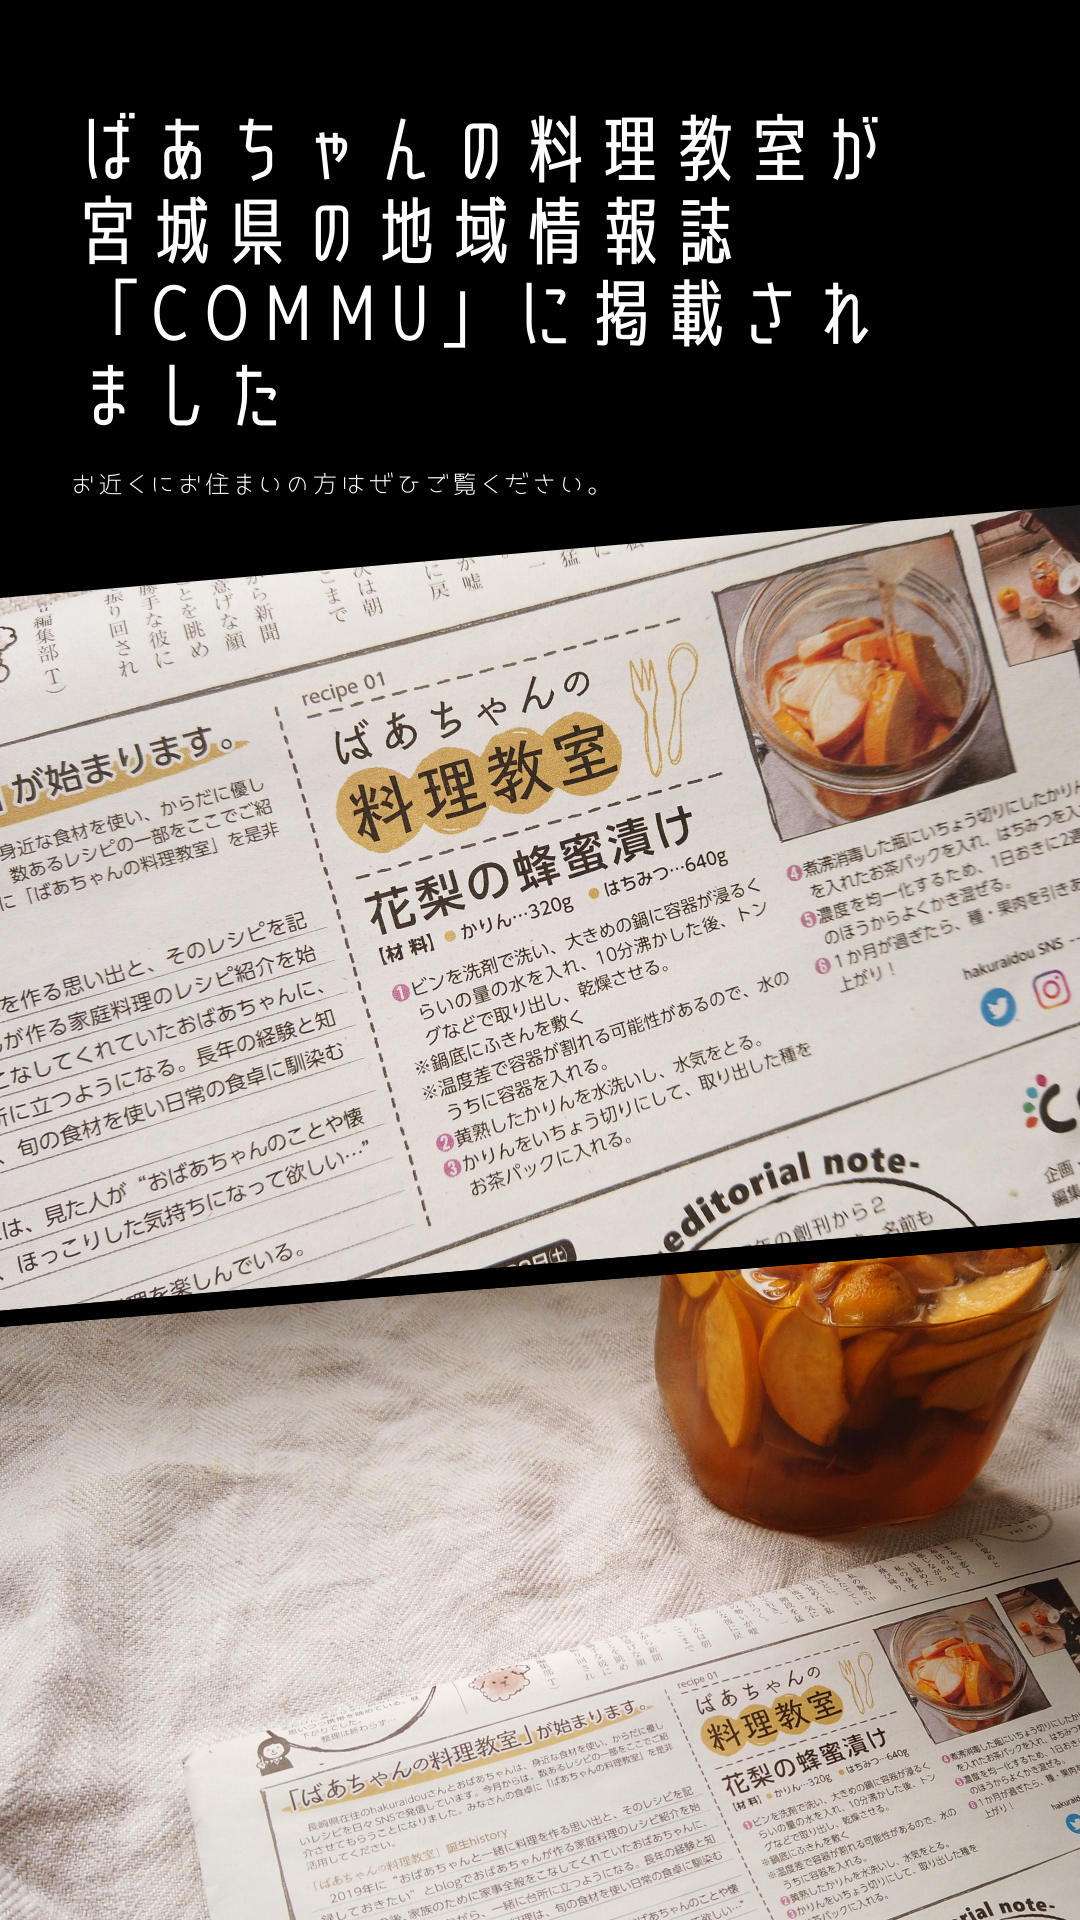 ばあちゃんの料理教室が宮城県の地域情報誌「commu」に掲載されました